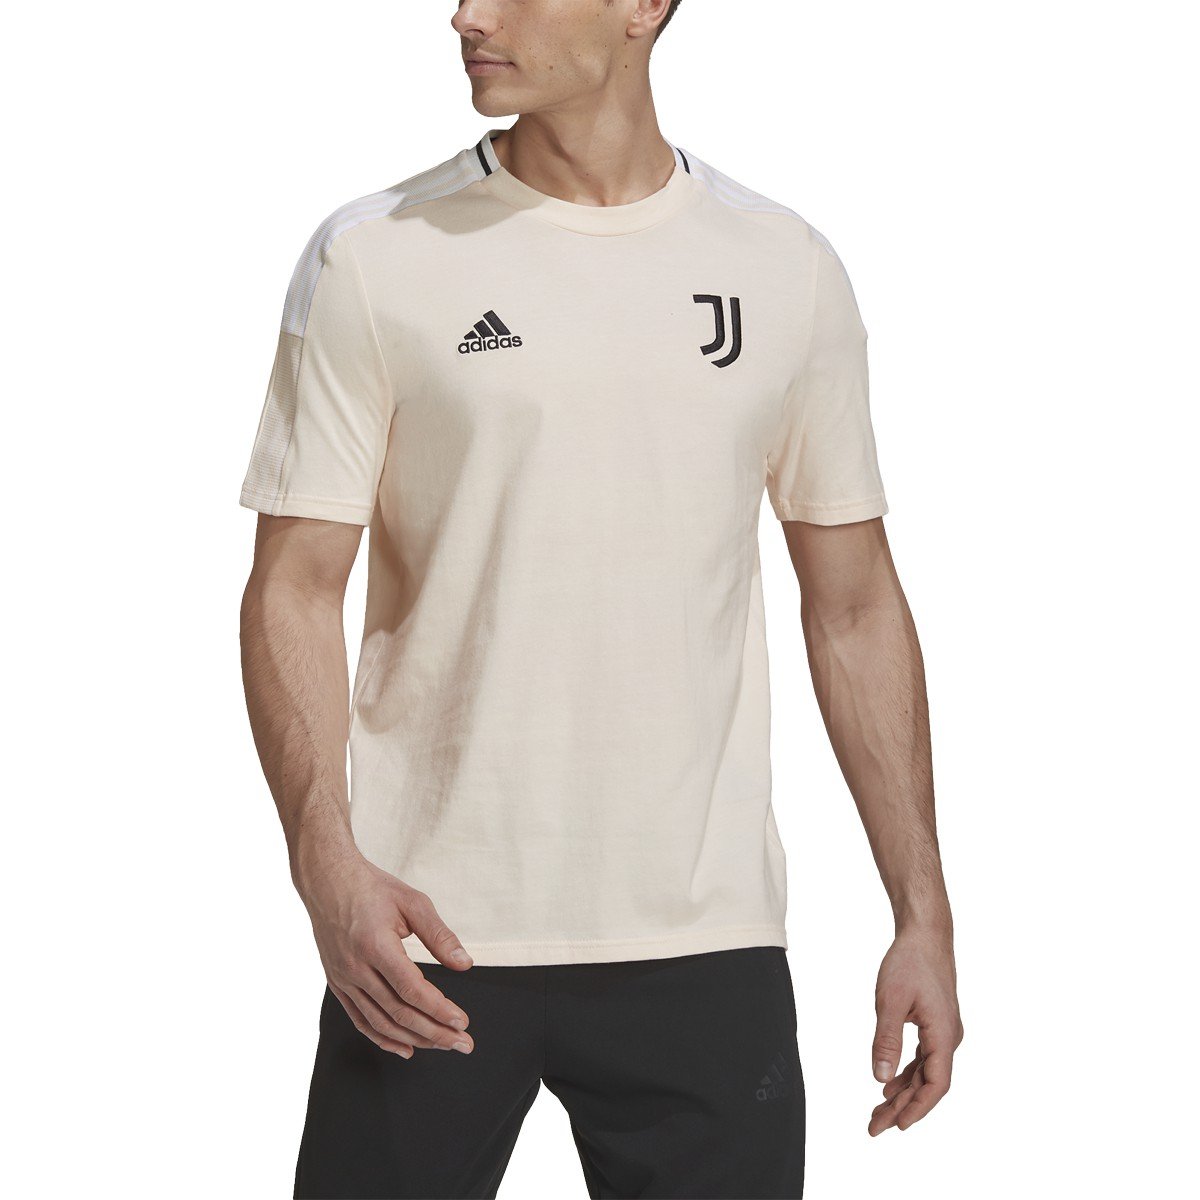 adidas Men's Juventus Tee | GK8608 Apparel Adidas Adult Small Pink Tint / Black 